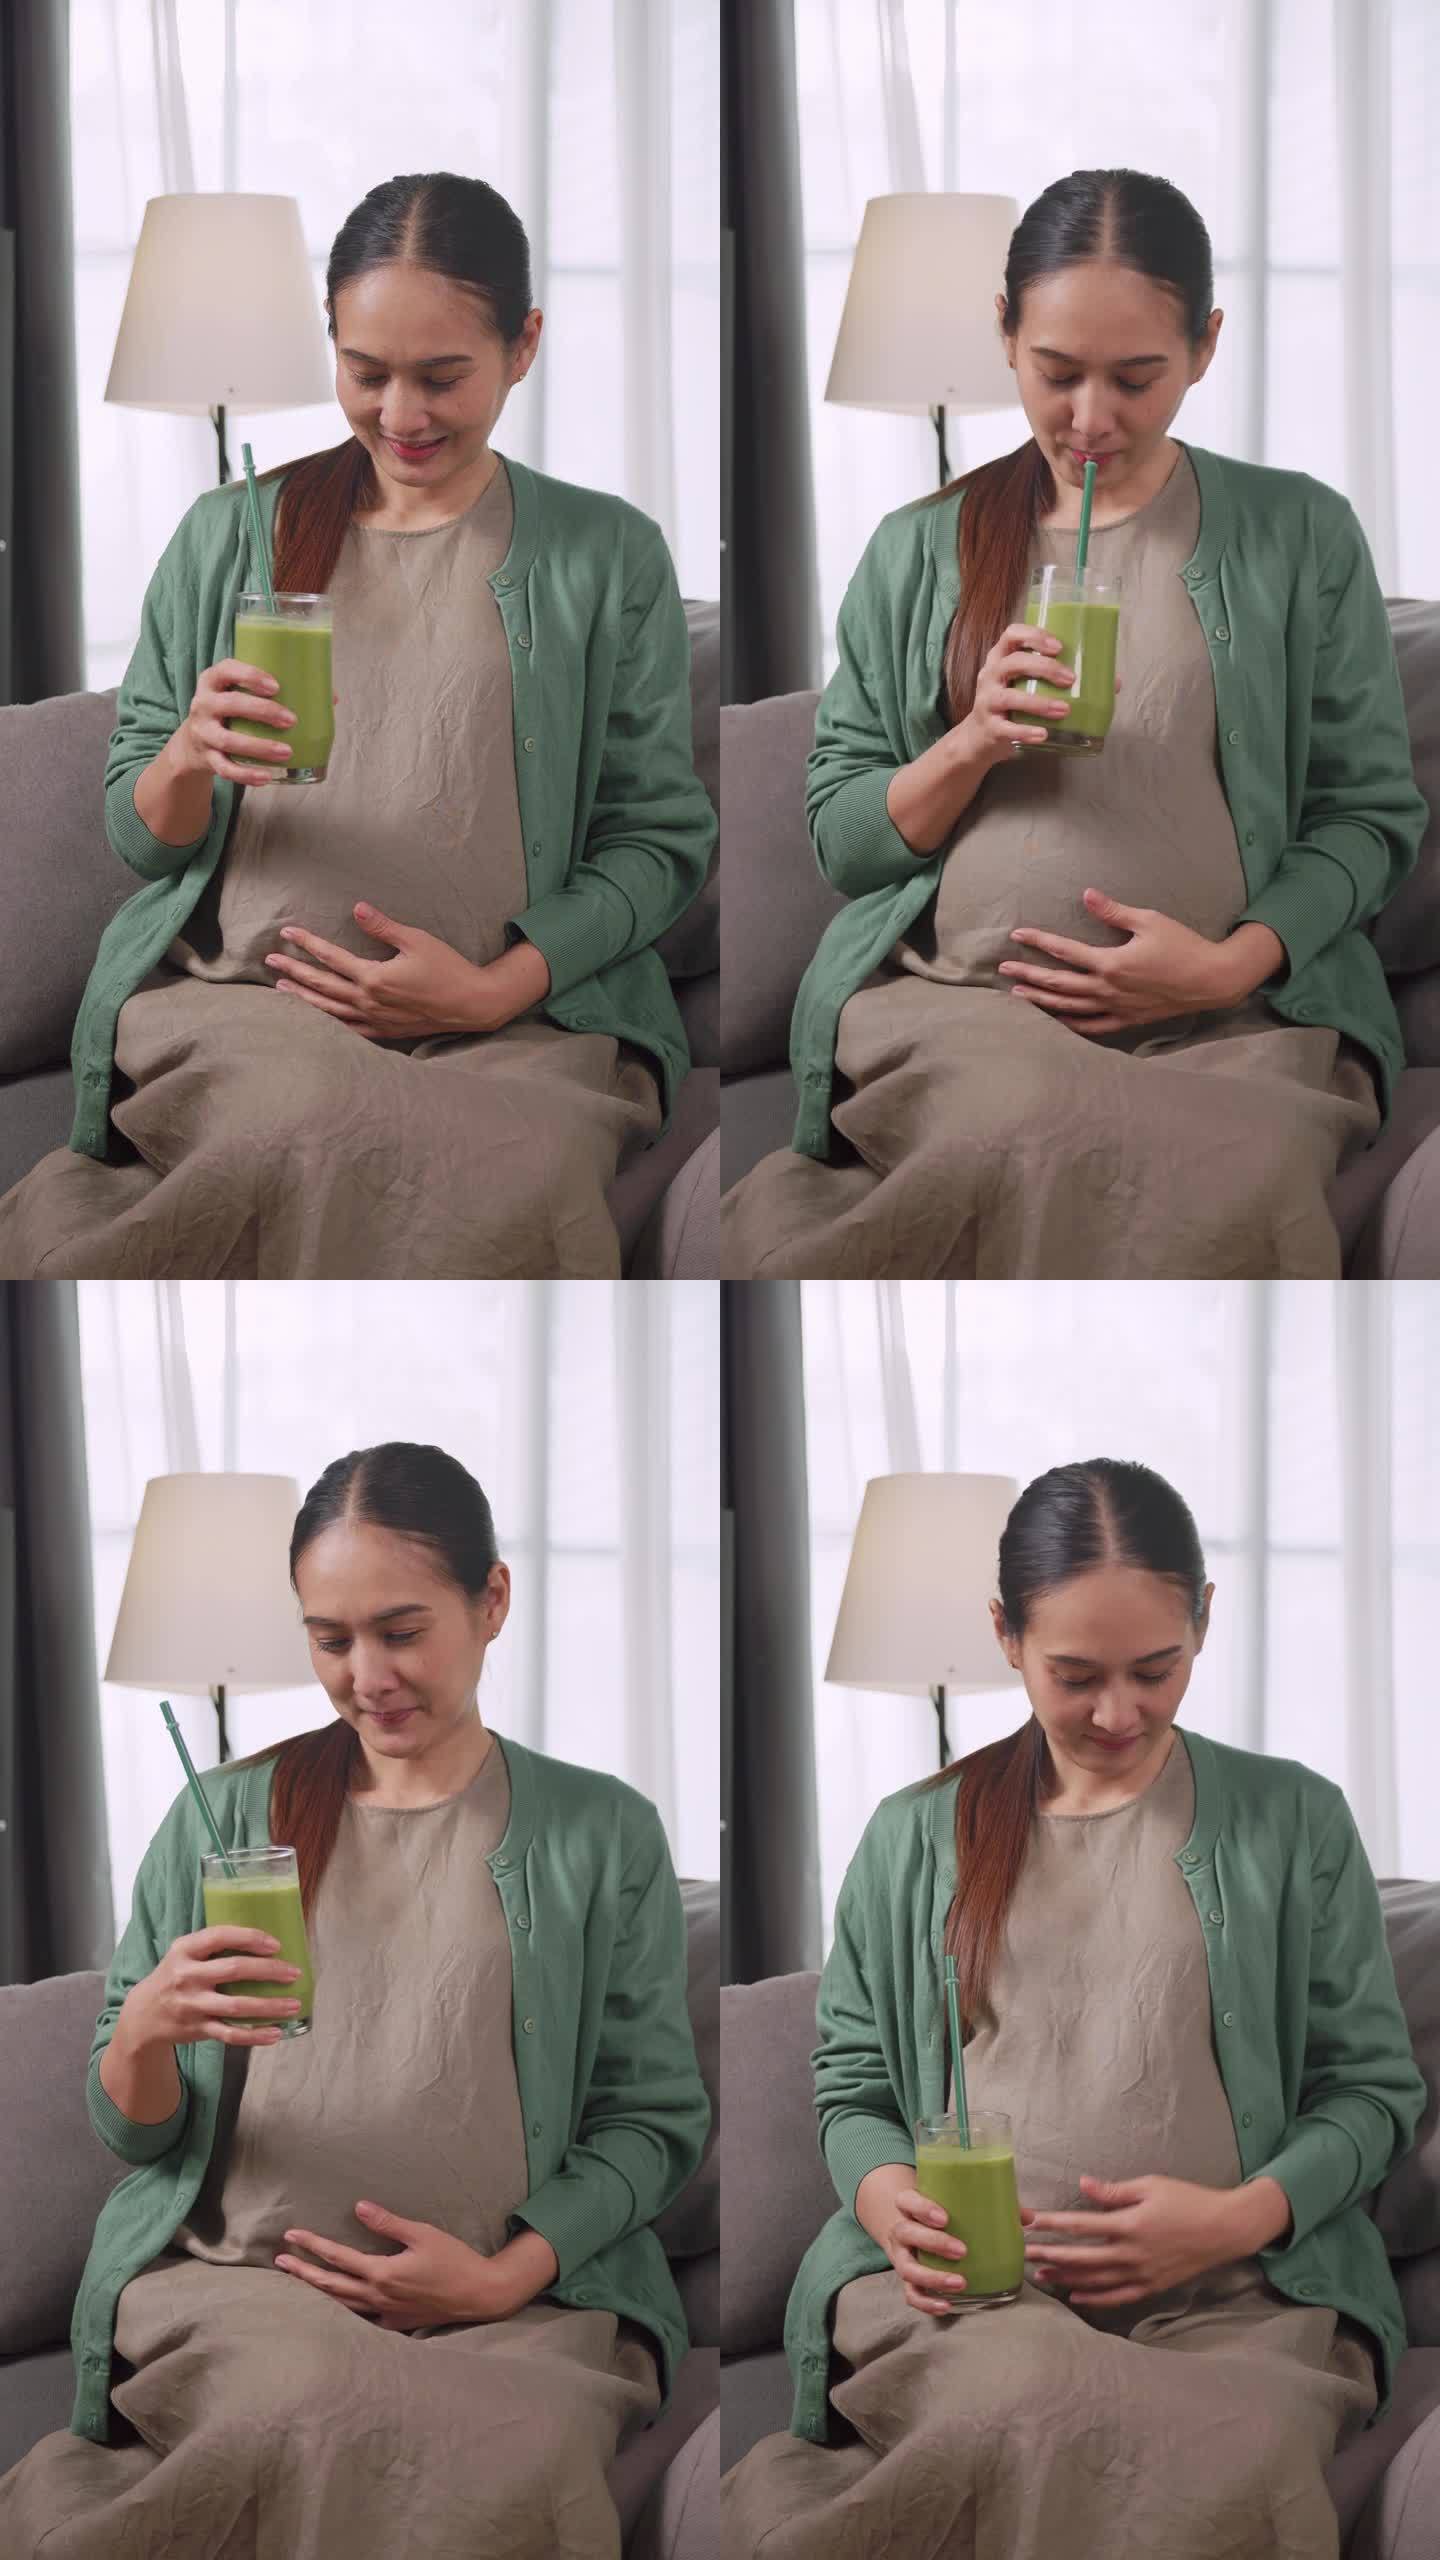 垂直夹。亚洲孕妇为了自己和胎儿的健康饮用蔬菜汁。